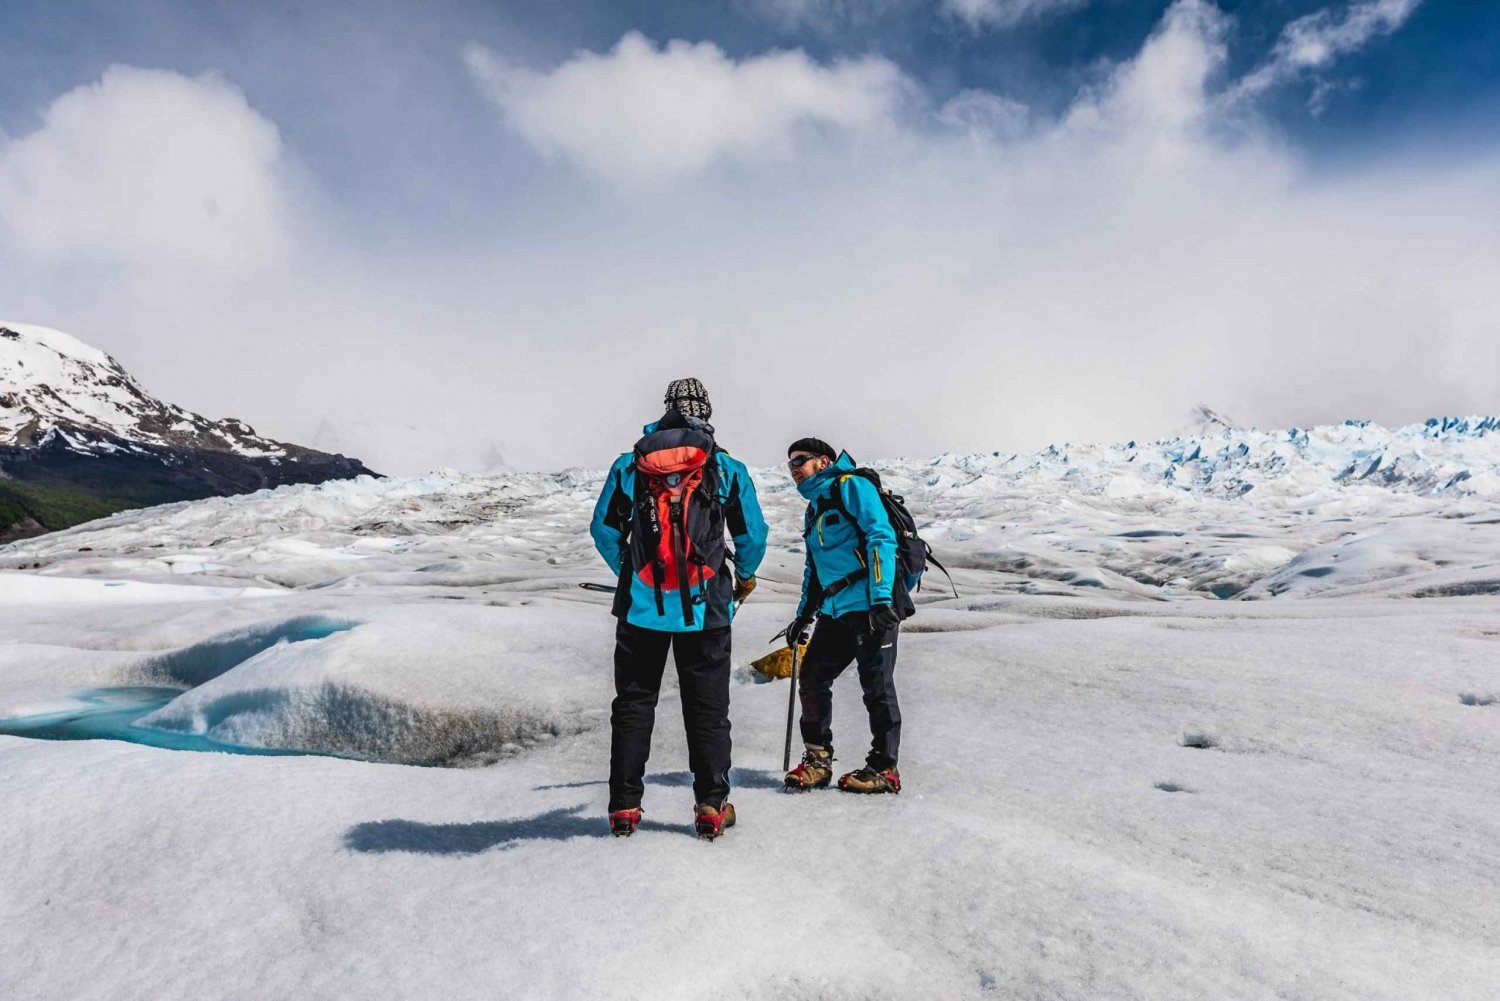 El Calafate: Perito Moreno Glacier Trekking Tour and Cruise